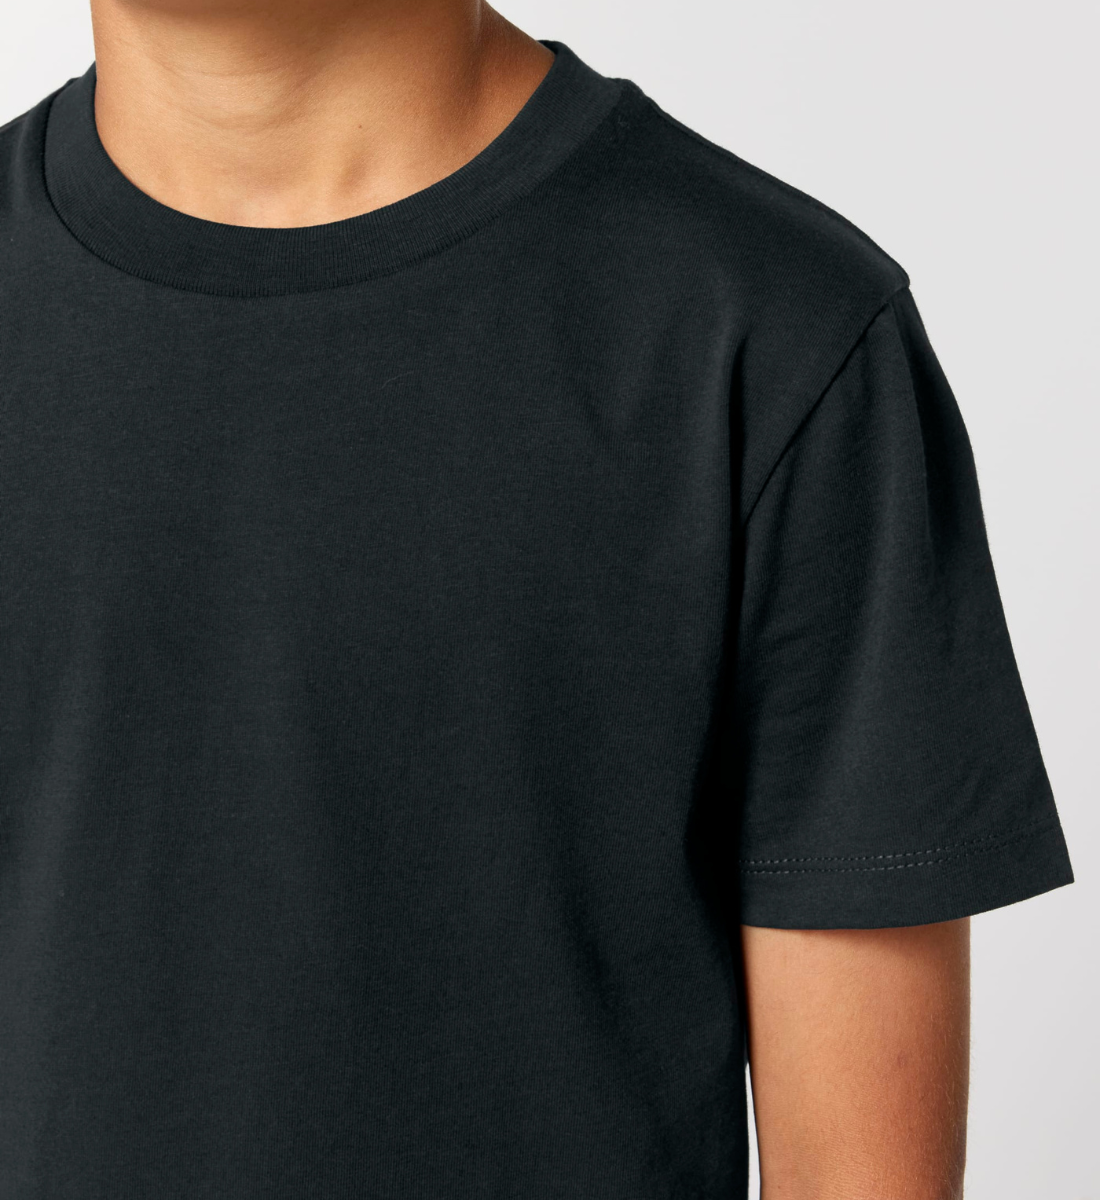 sonne + mond l kinder t-shirt schwarz l kleidung für kinder l ausgefallene yoga kleidung l umweltfreundliche mode l nachhaltige mode online shoppen